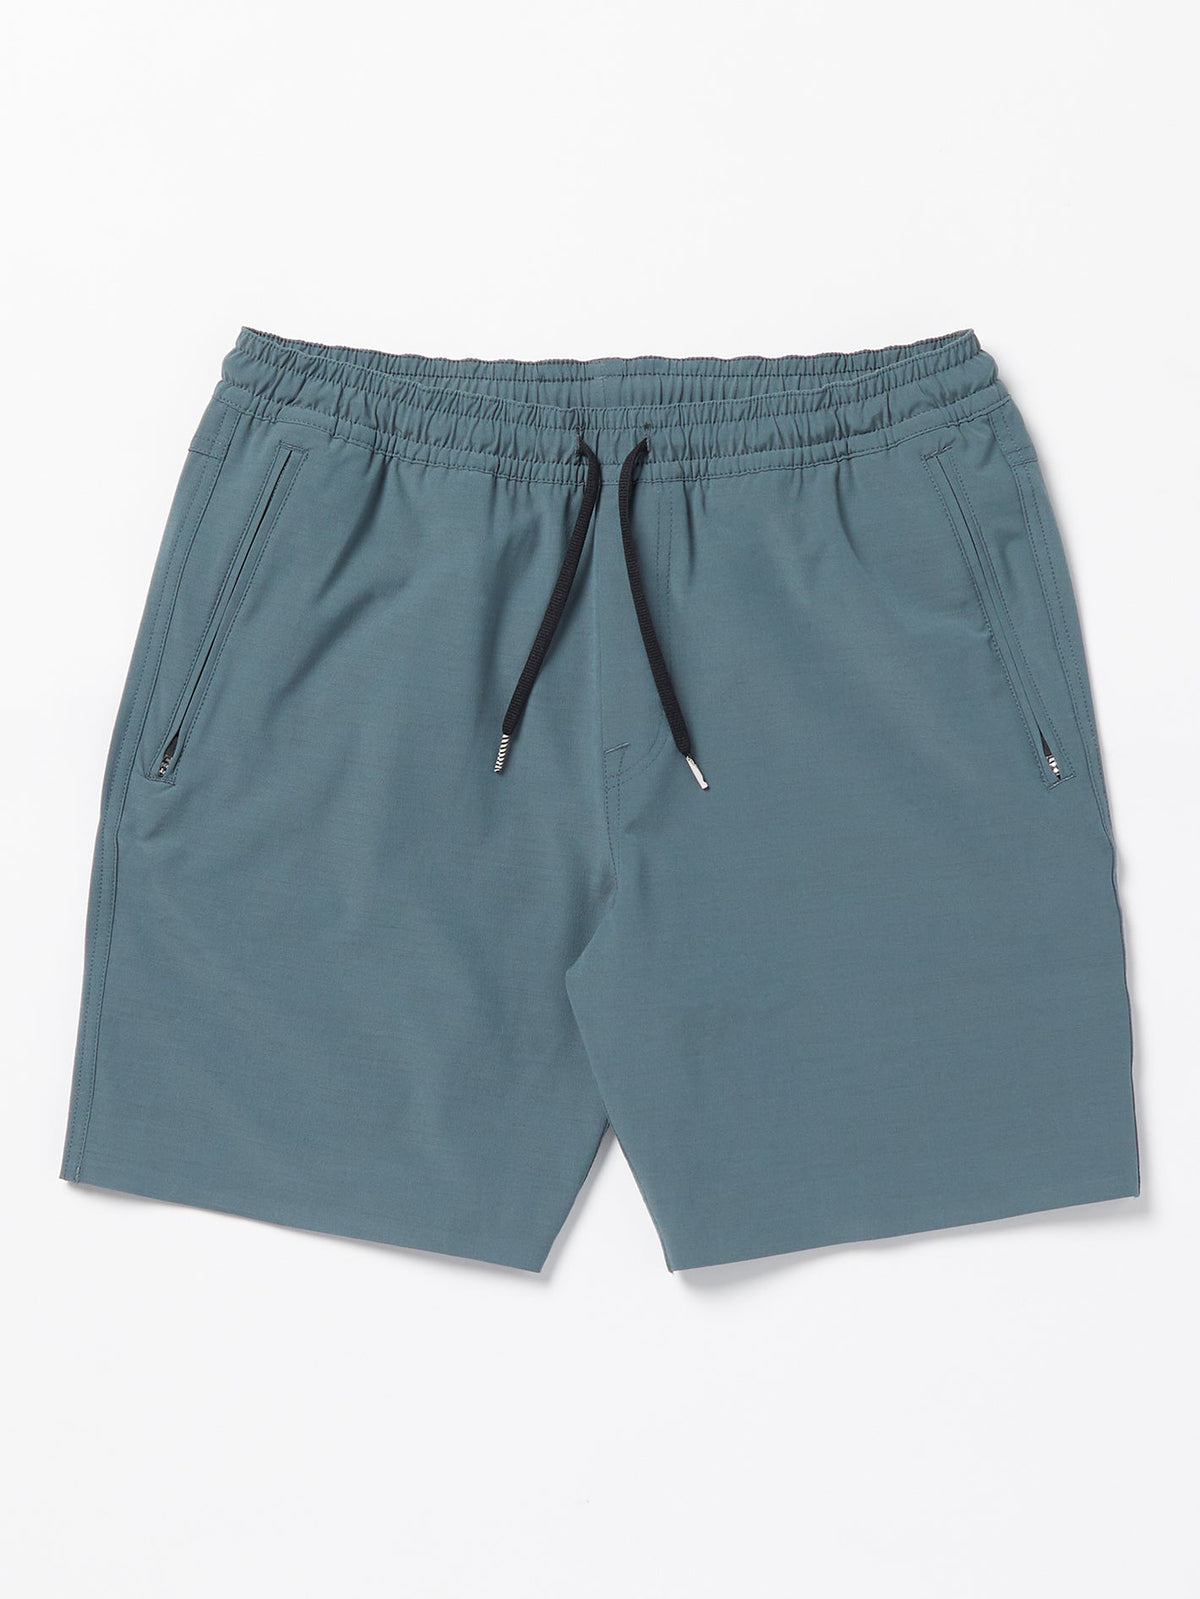 Volcom Wrecpack Hybrid Men's Shorts Dark Slate